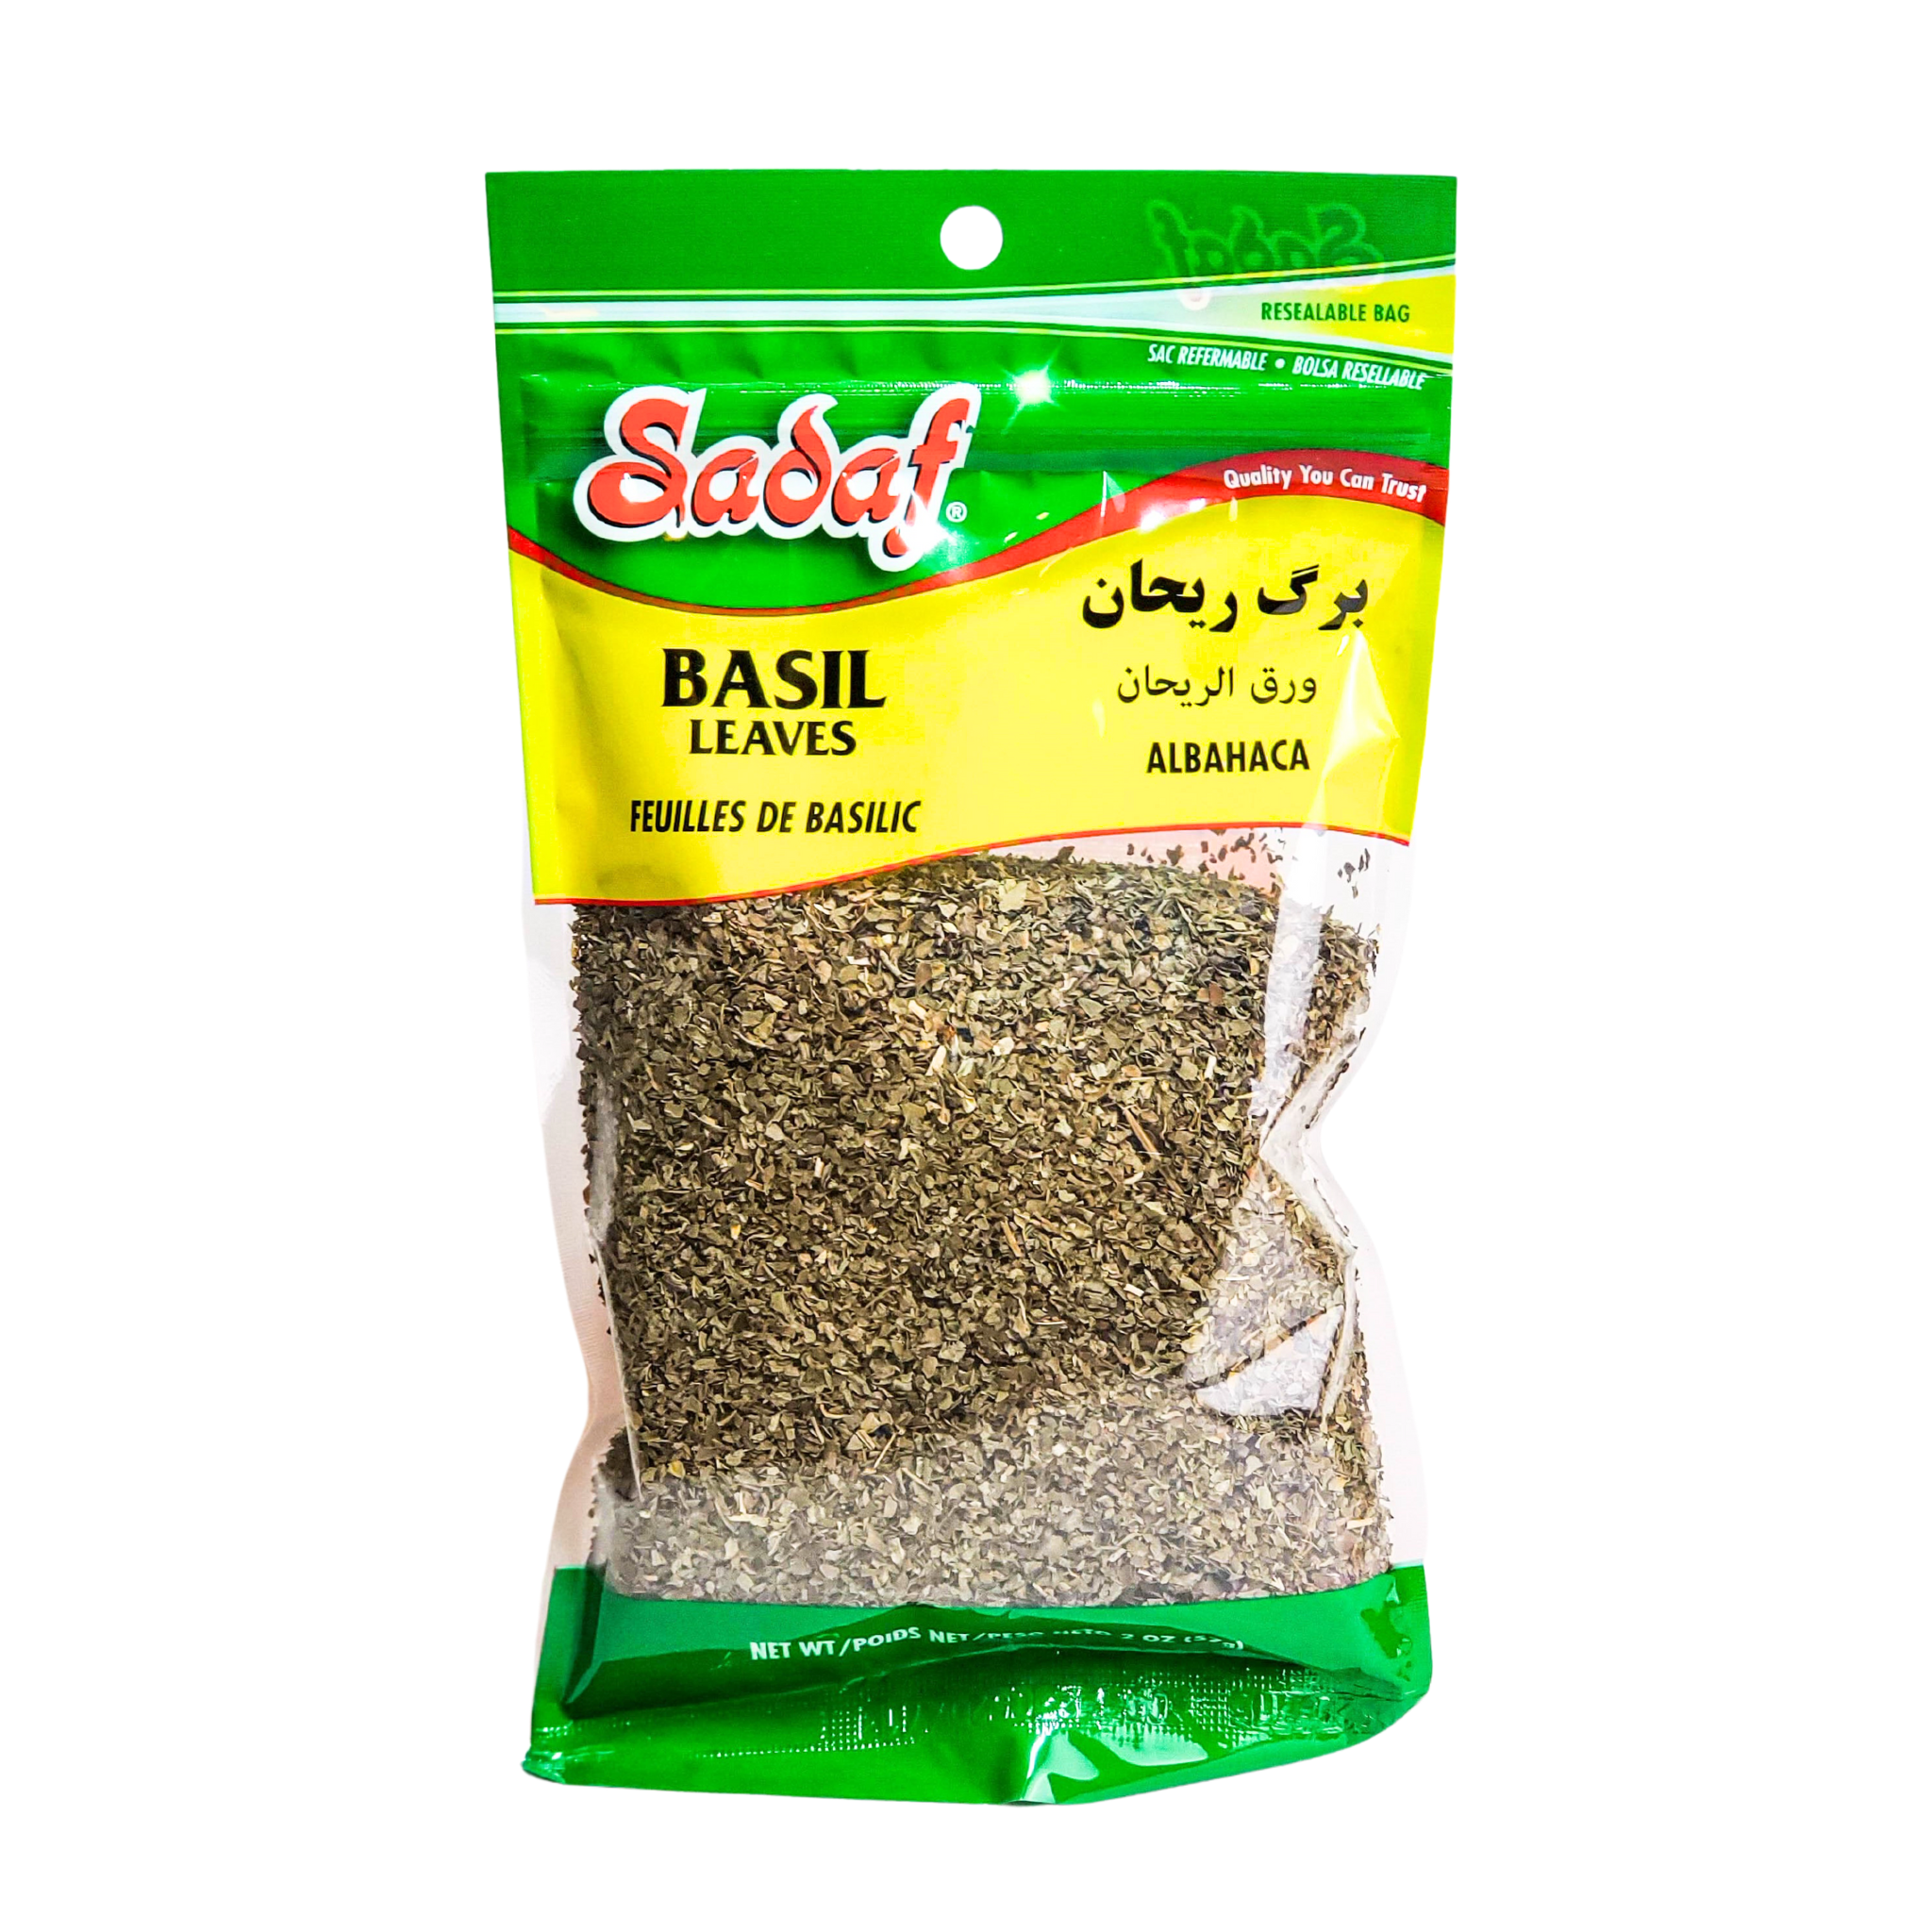 Sadaf Basil Leaves 57g